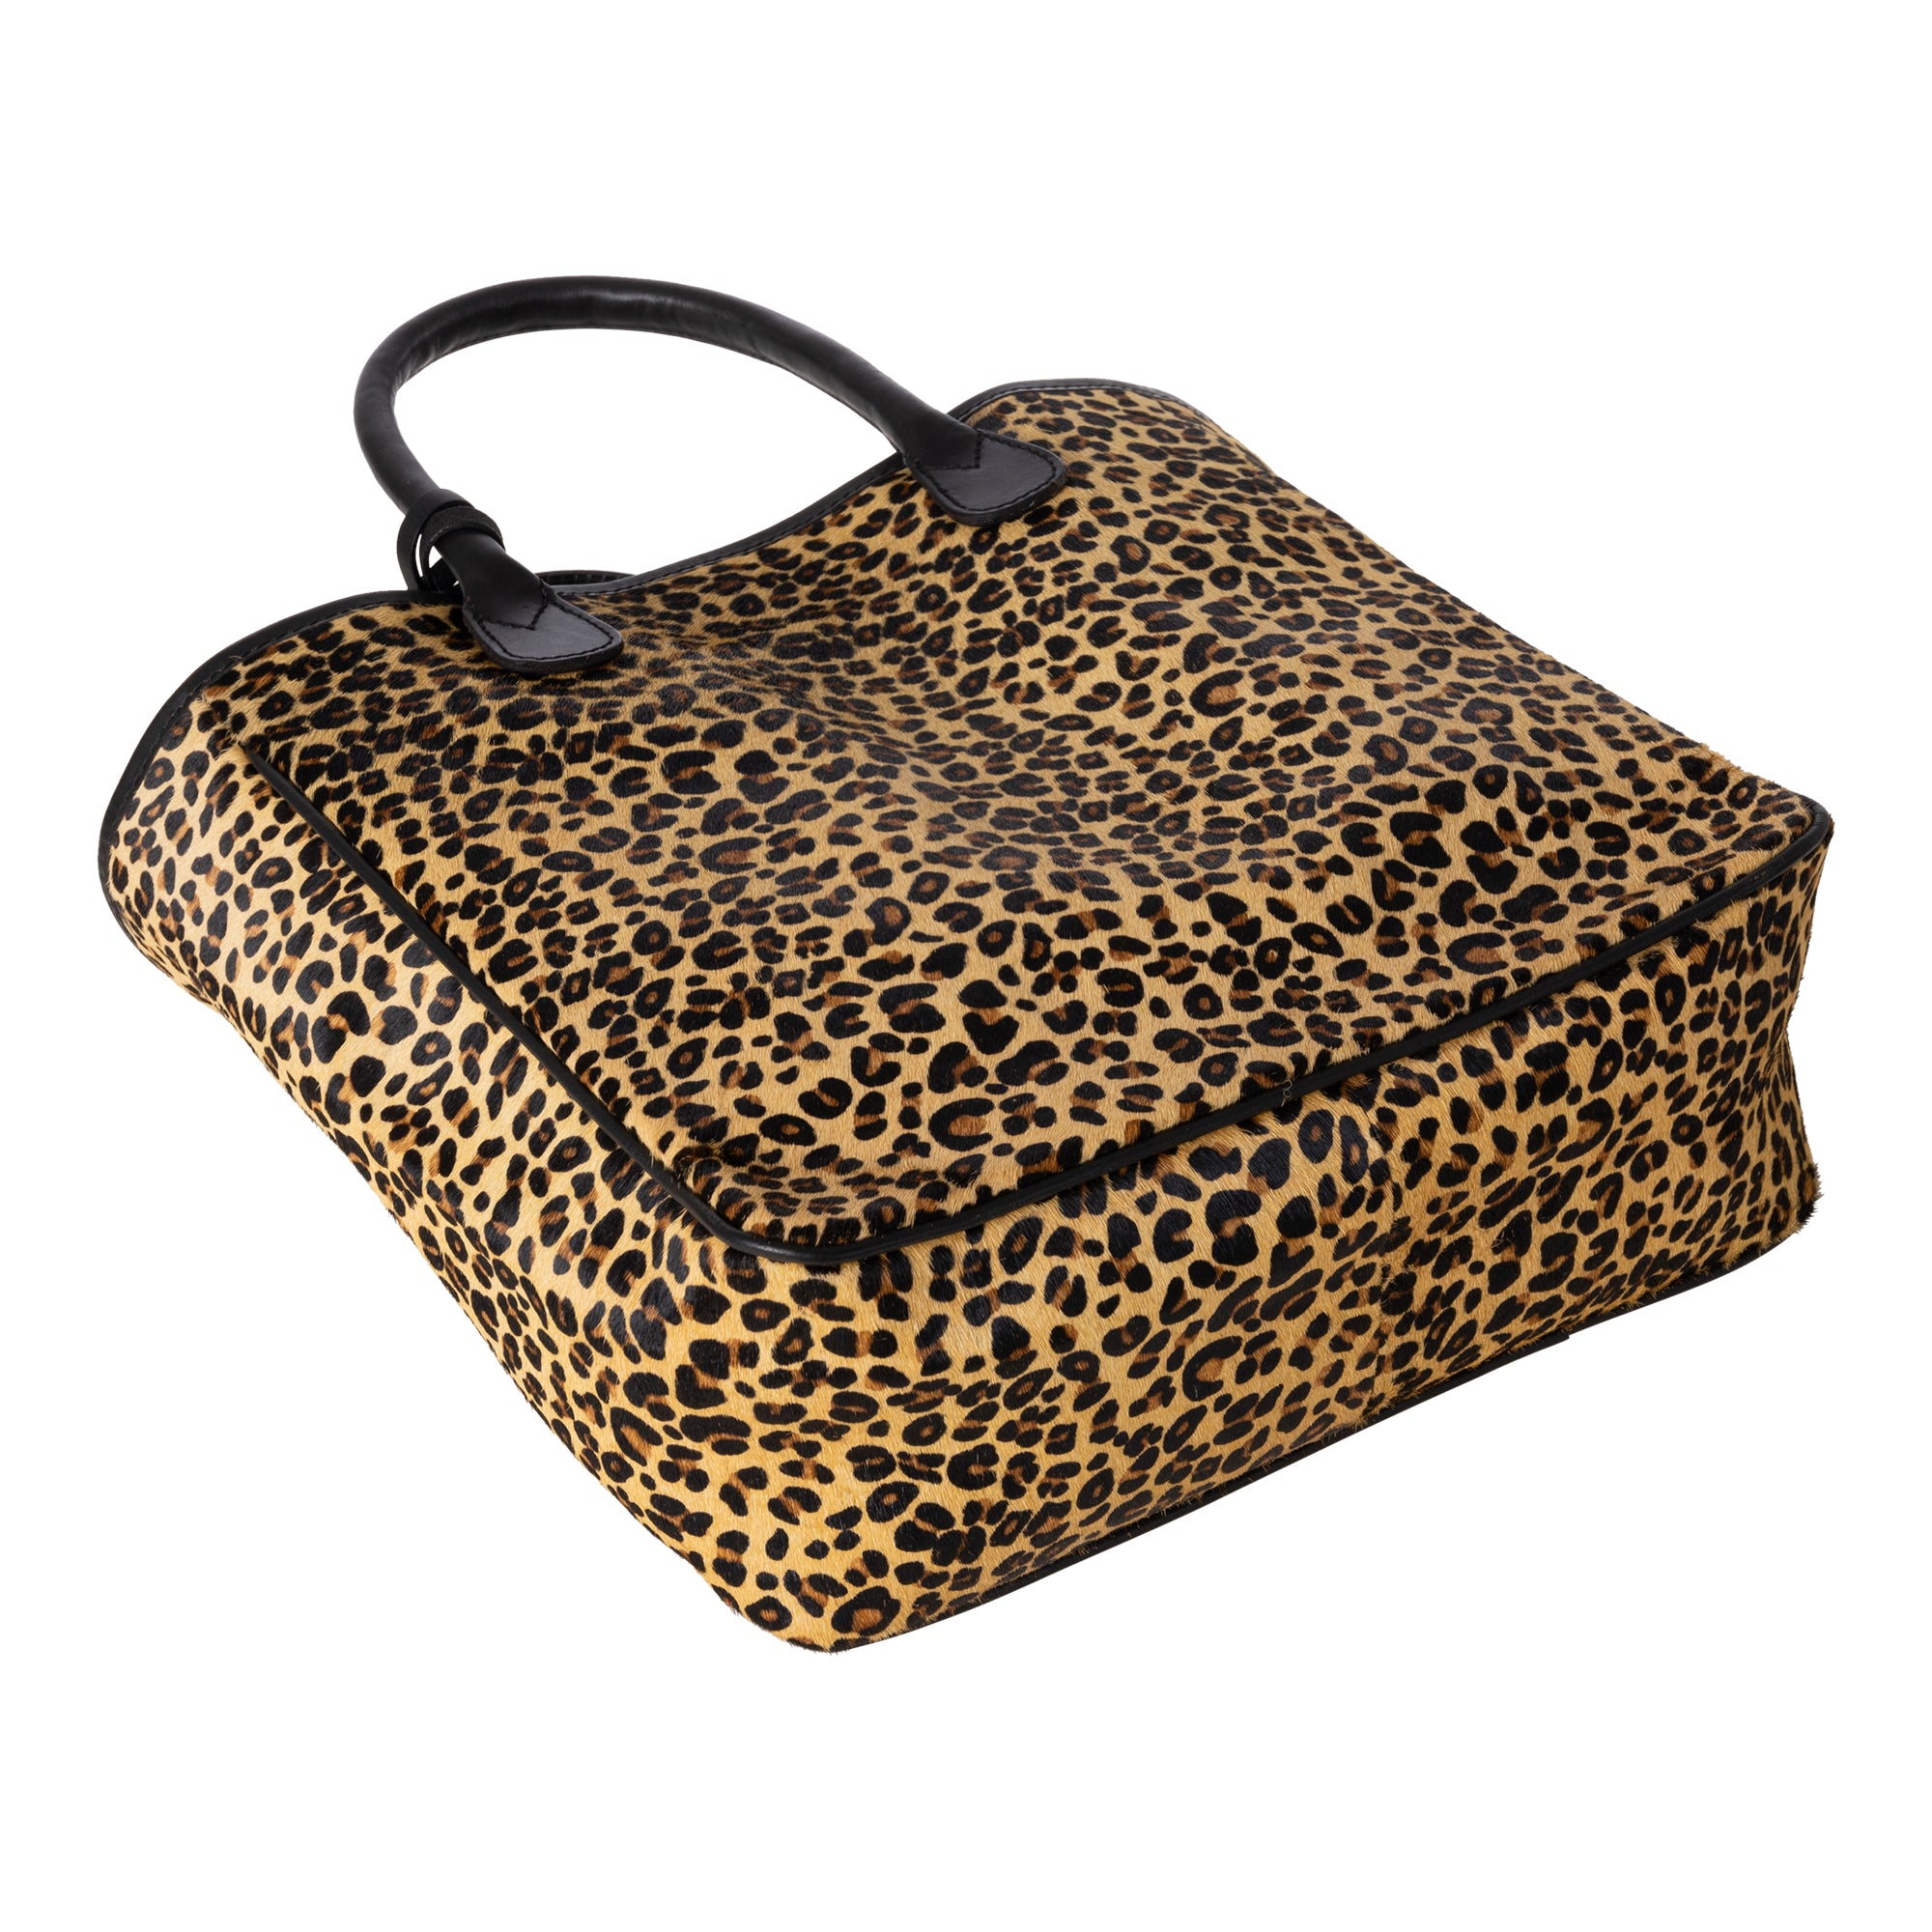 Brown Leopard Print Weekend Bag